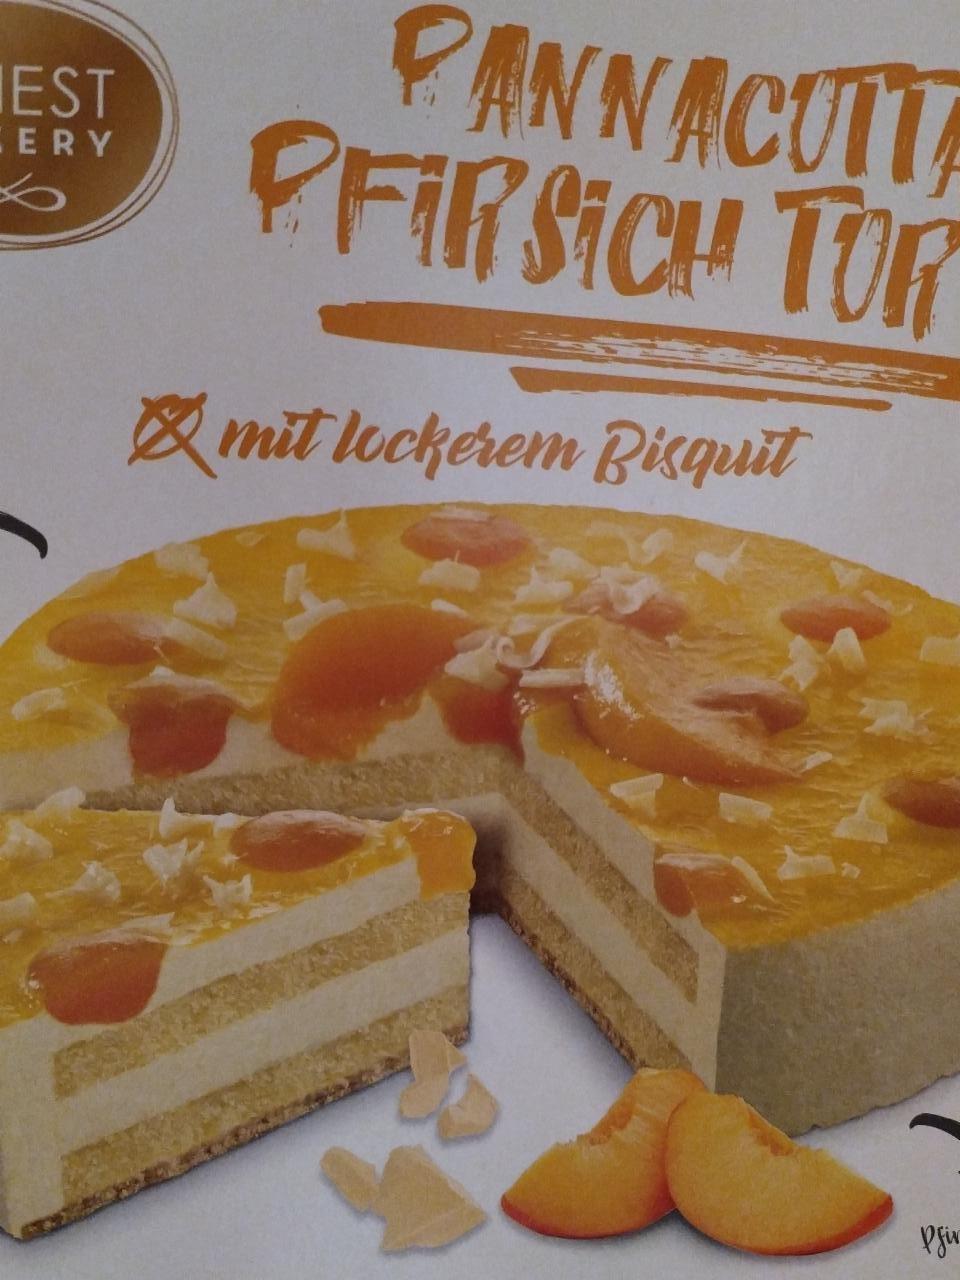 Képek - Pannacutta pfirsich torte Finest Bakery